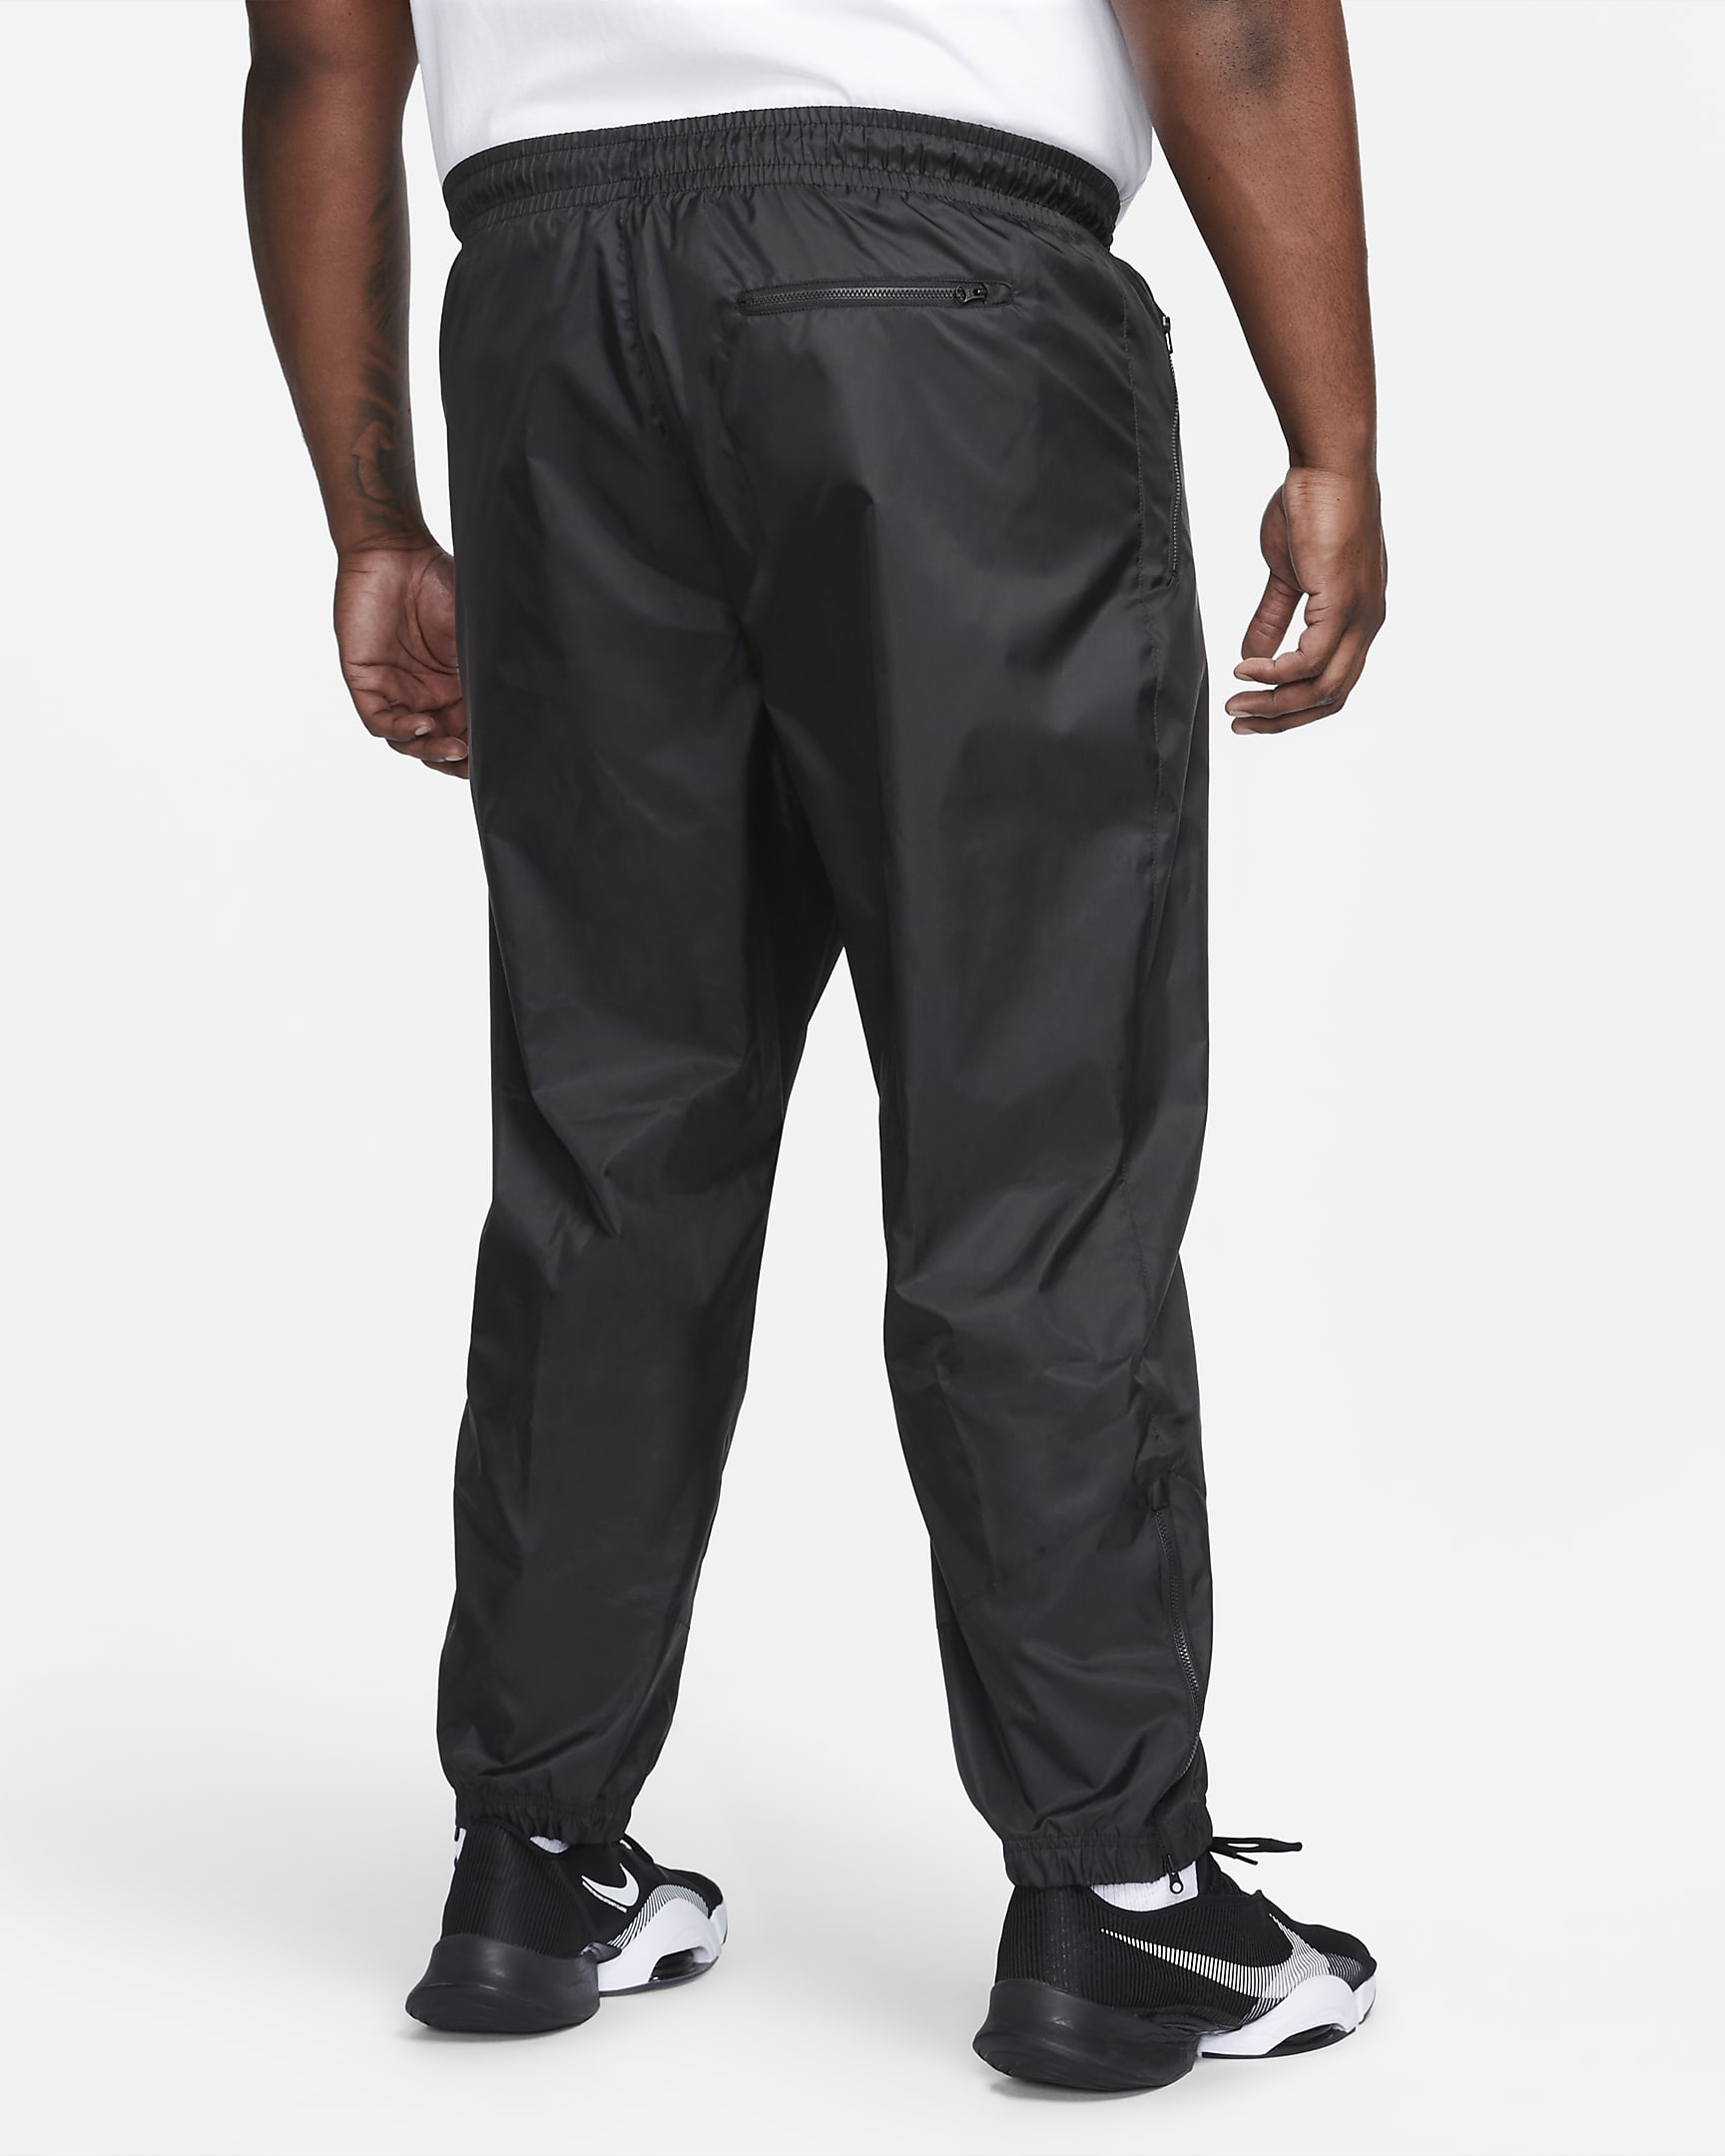 Nike Windrunner Men's Woven Lined Trousers. Nike RO